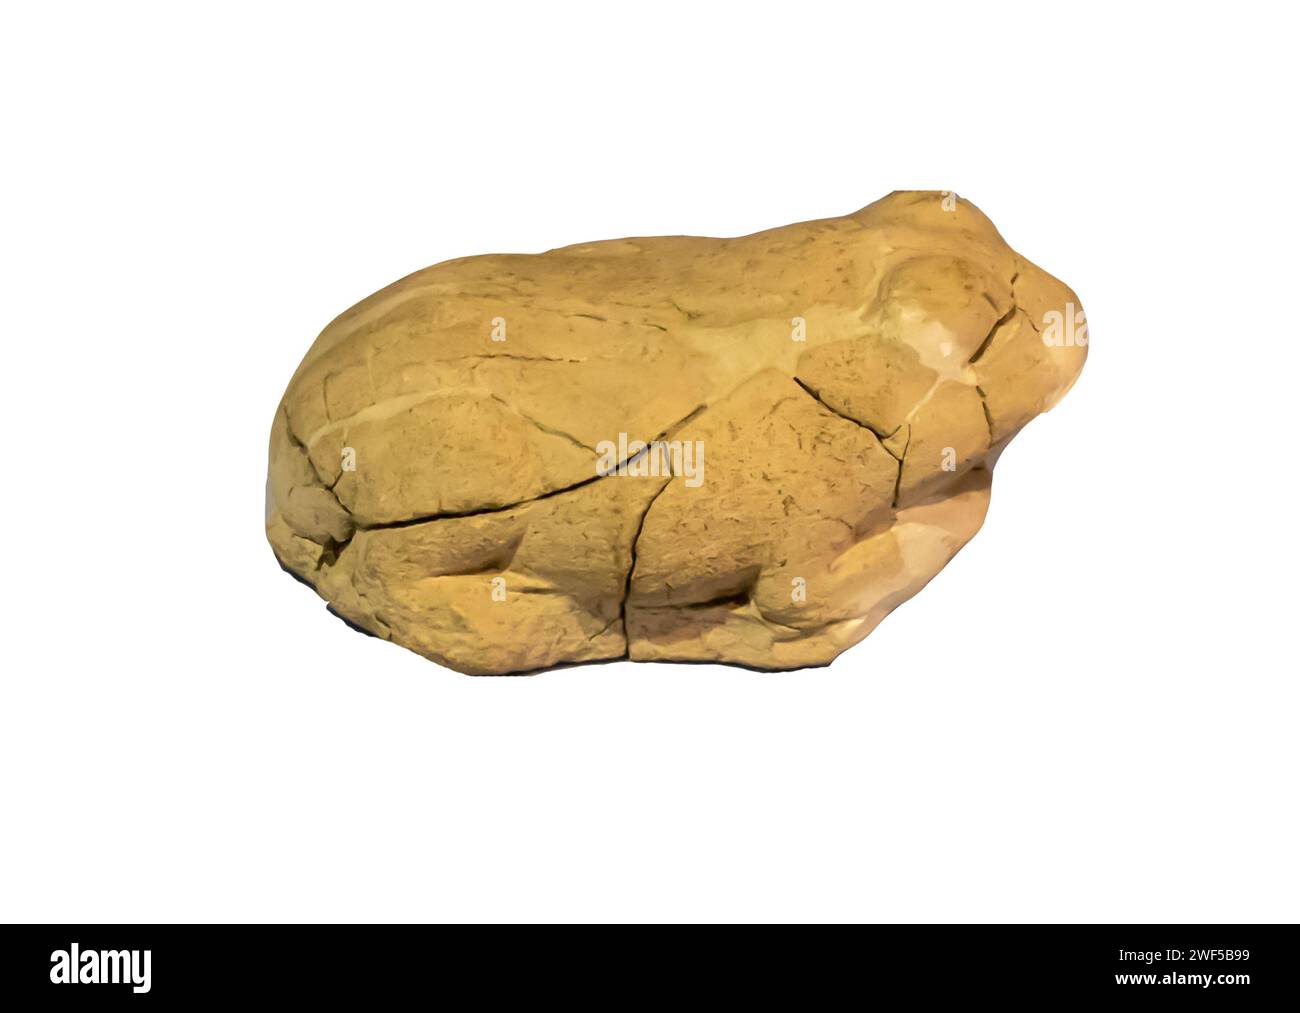 Figurine de grenouille de la 1ère moitié du vie siècle av. J.-C. Ildiri - Erythrai Banque D'Images